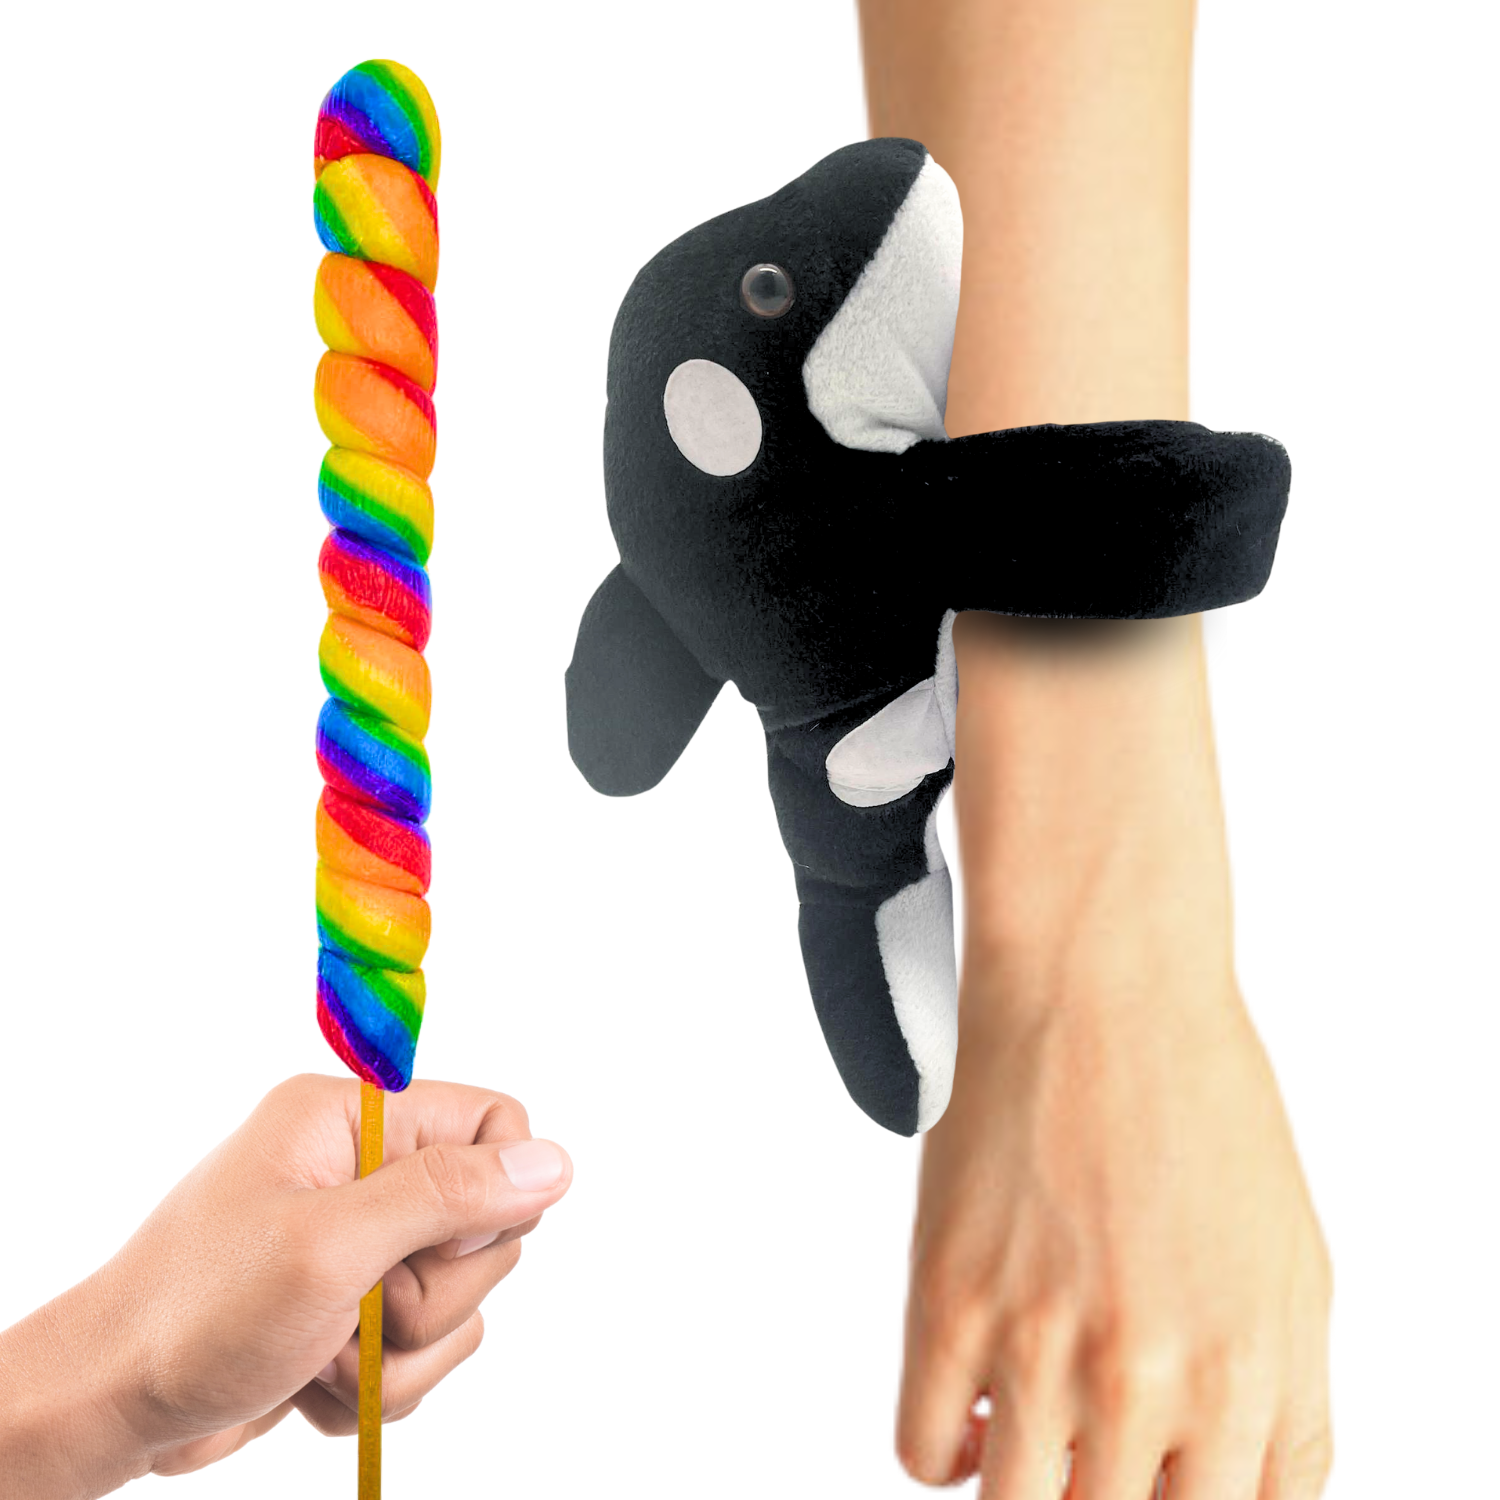 Orca Slap Bracelet With Lollipop